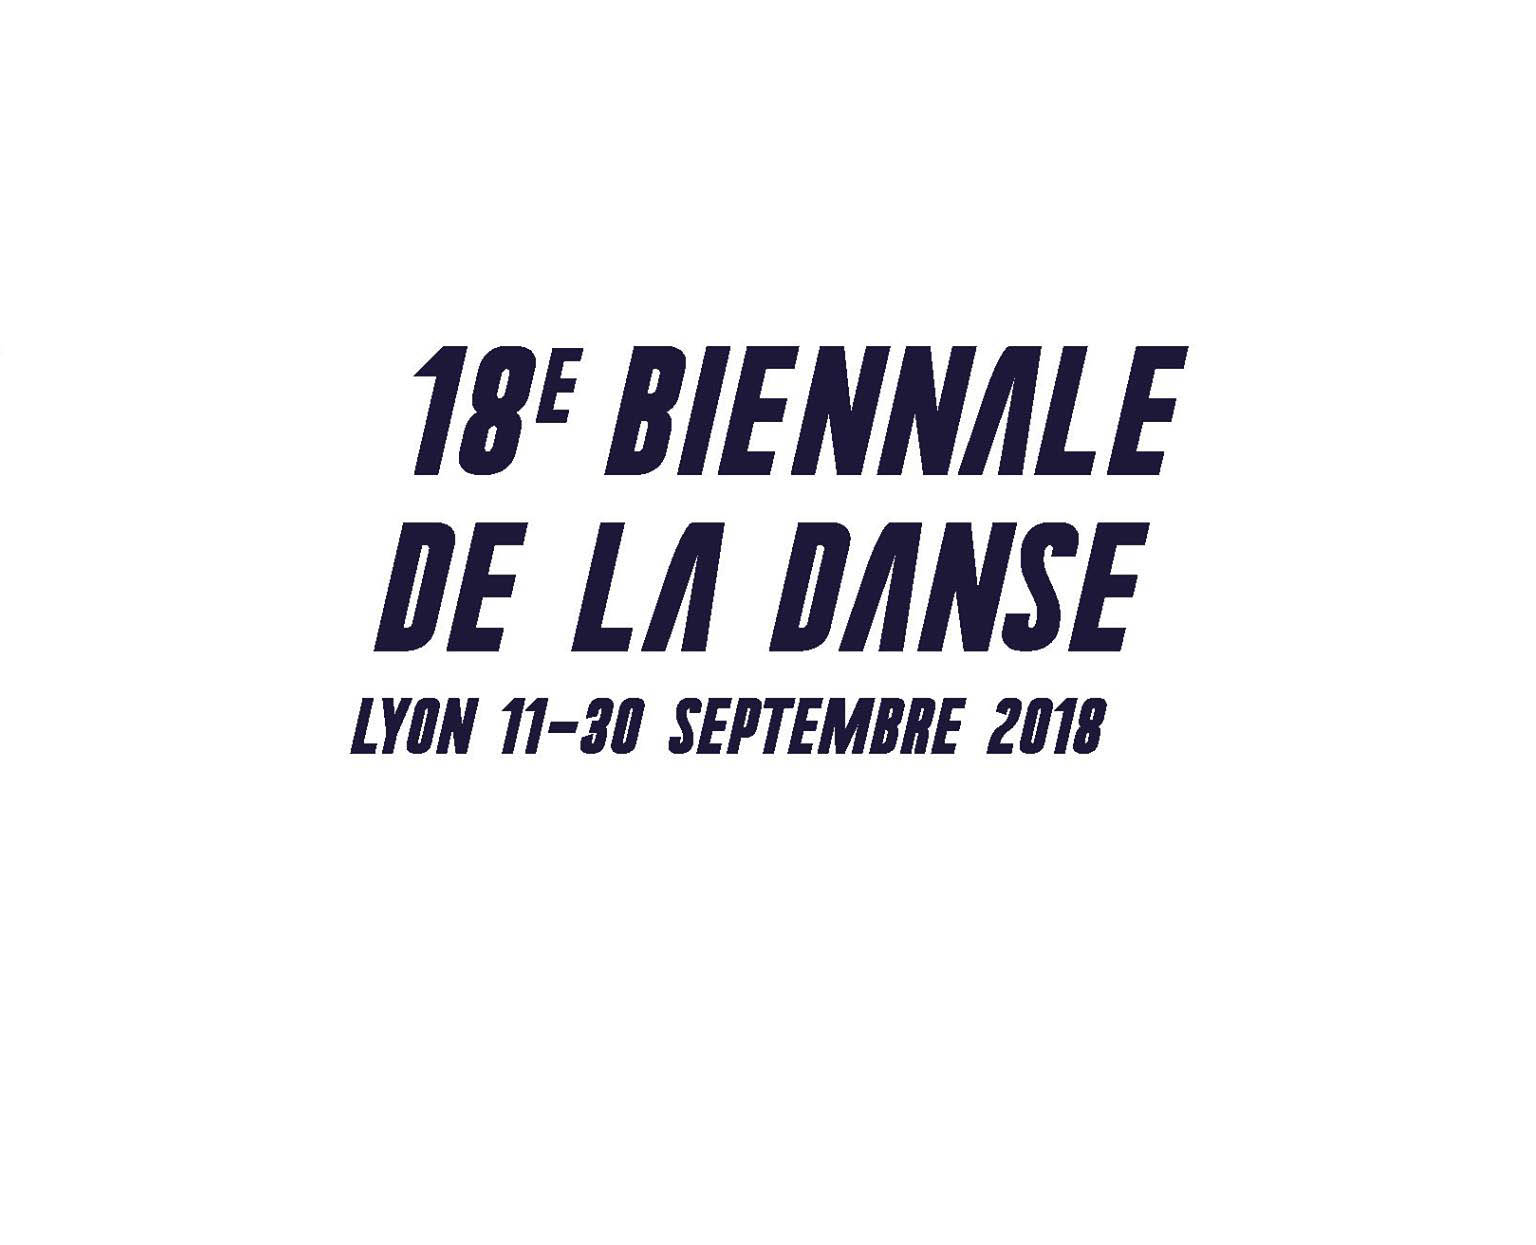 The Dance Biennial 2018